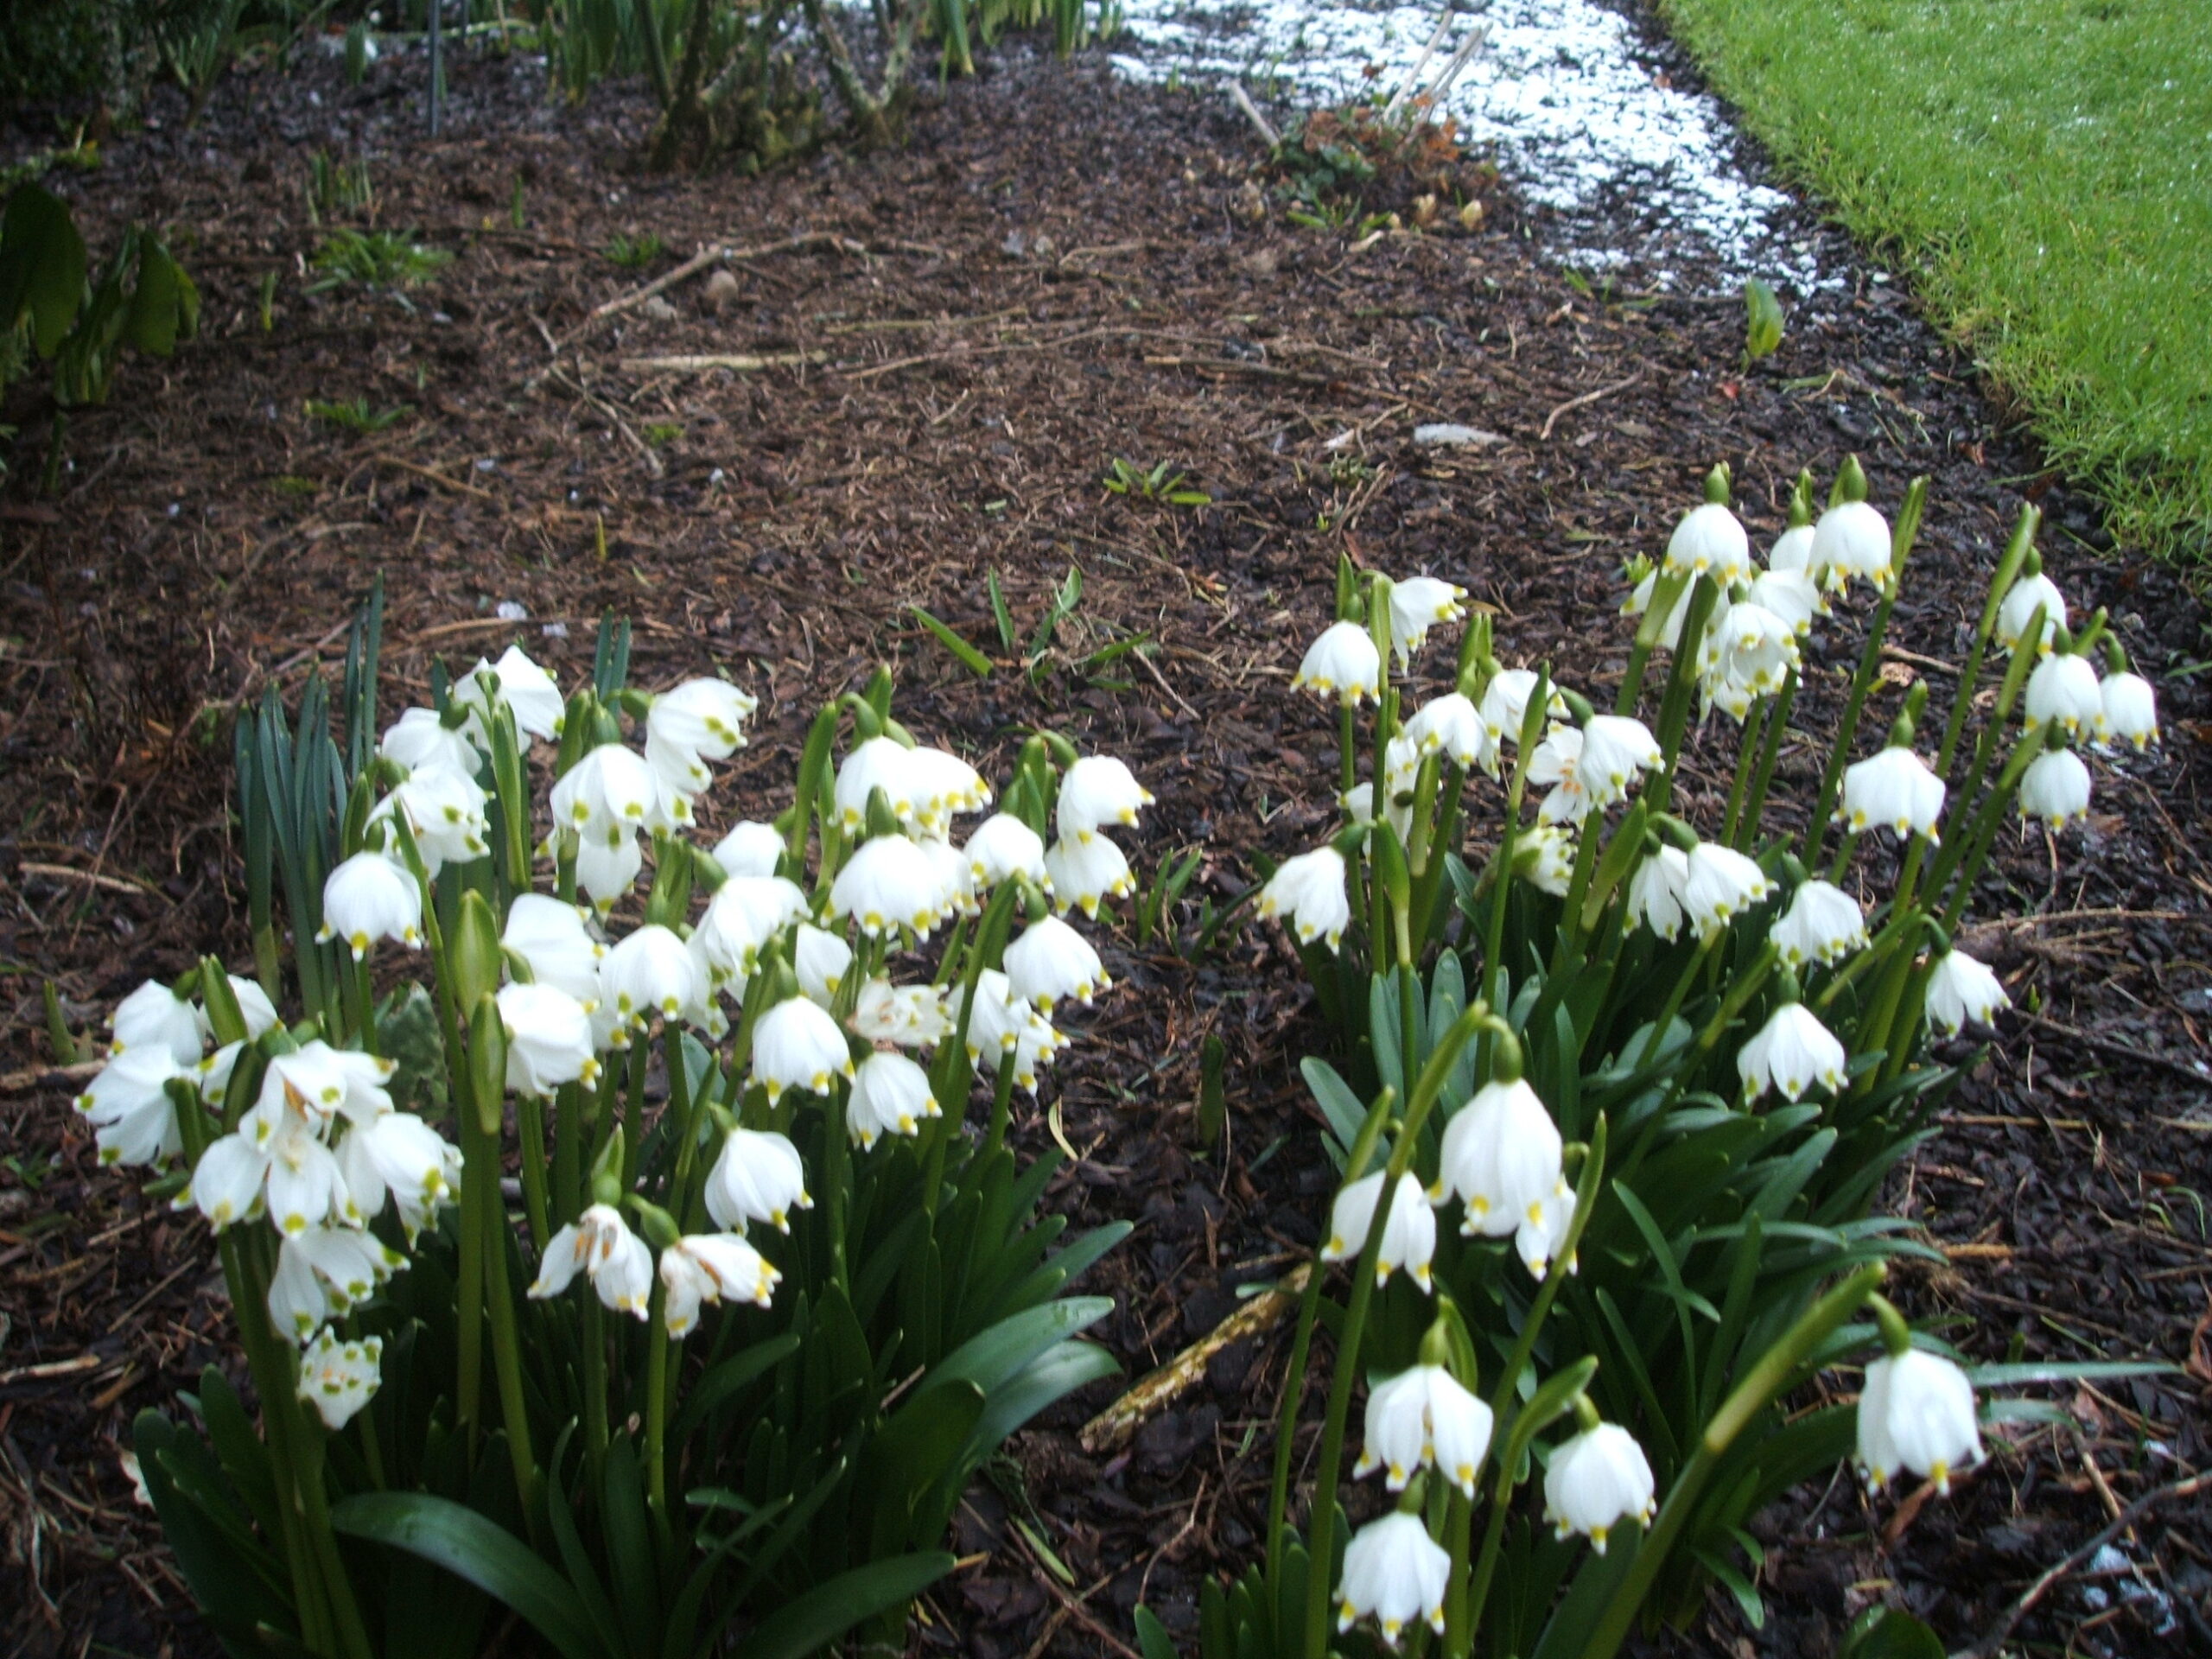 Snowdrop Month at Altamont Gardens